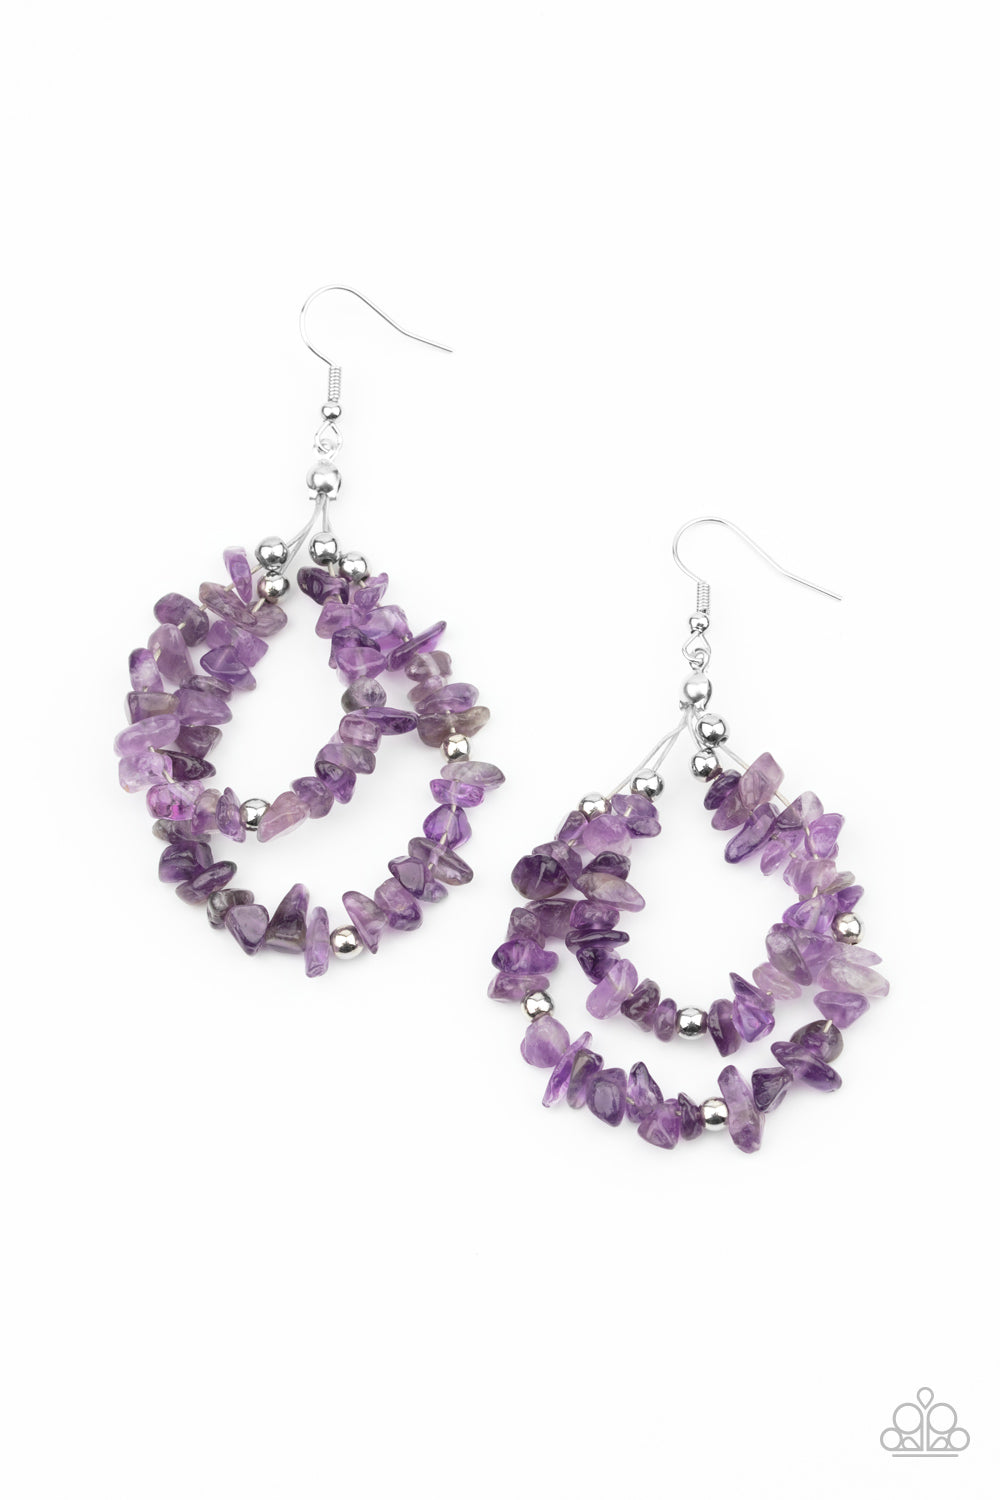 Canyon Rock Art - Purple earrings